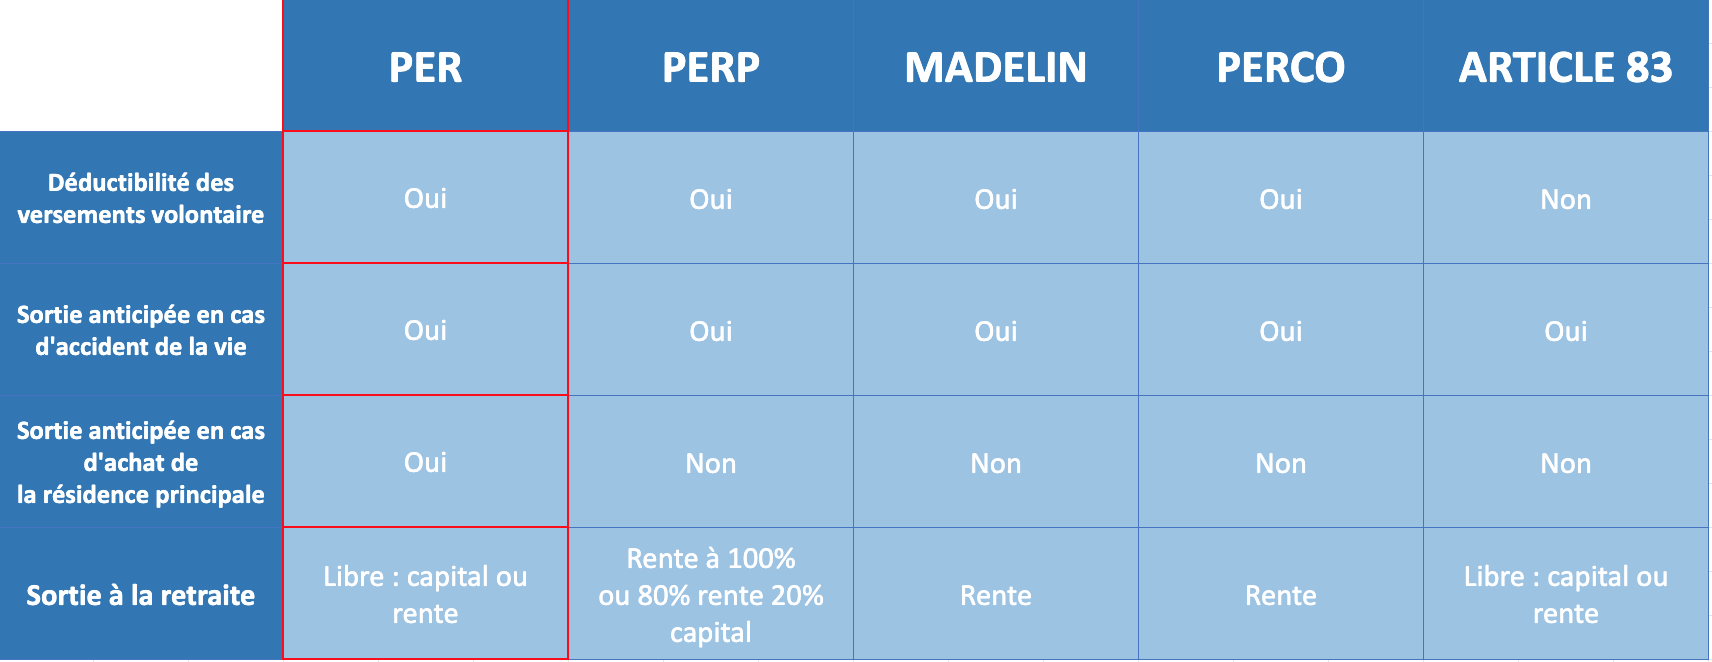 Tableau comparatif entre le PER, PERP, Madelin, Perco et article 83